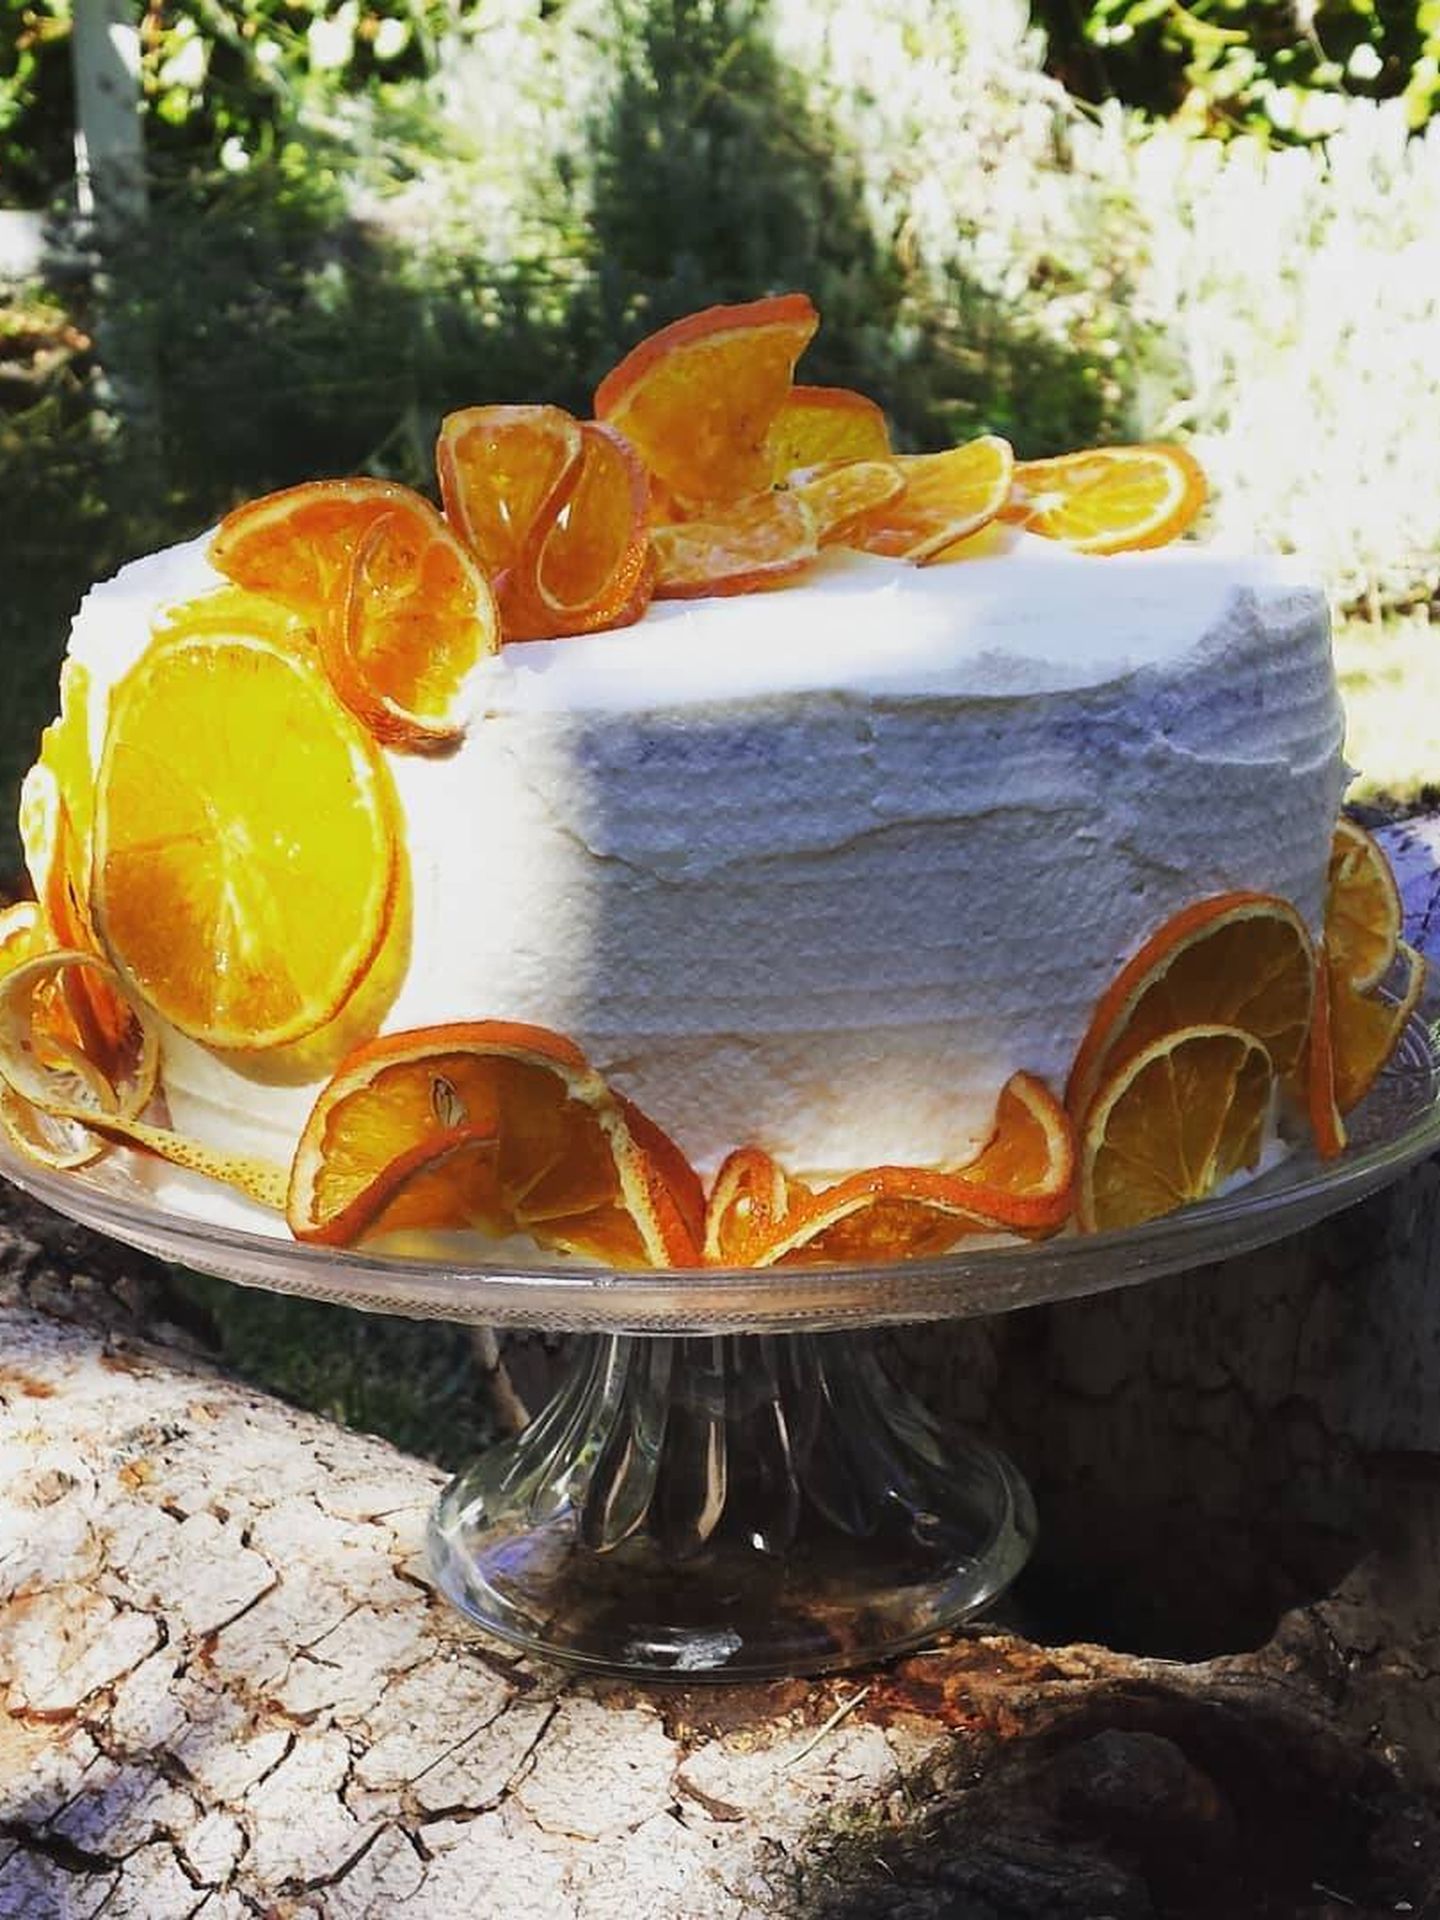 Una tarta de Patricia Arismendi. (Instagram/ @patriciaarismendicatering)